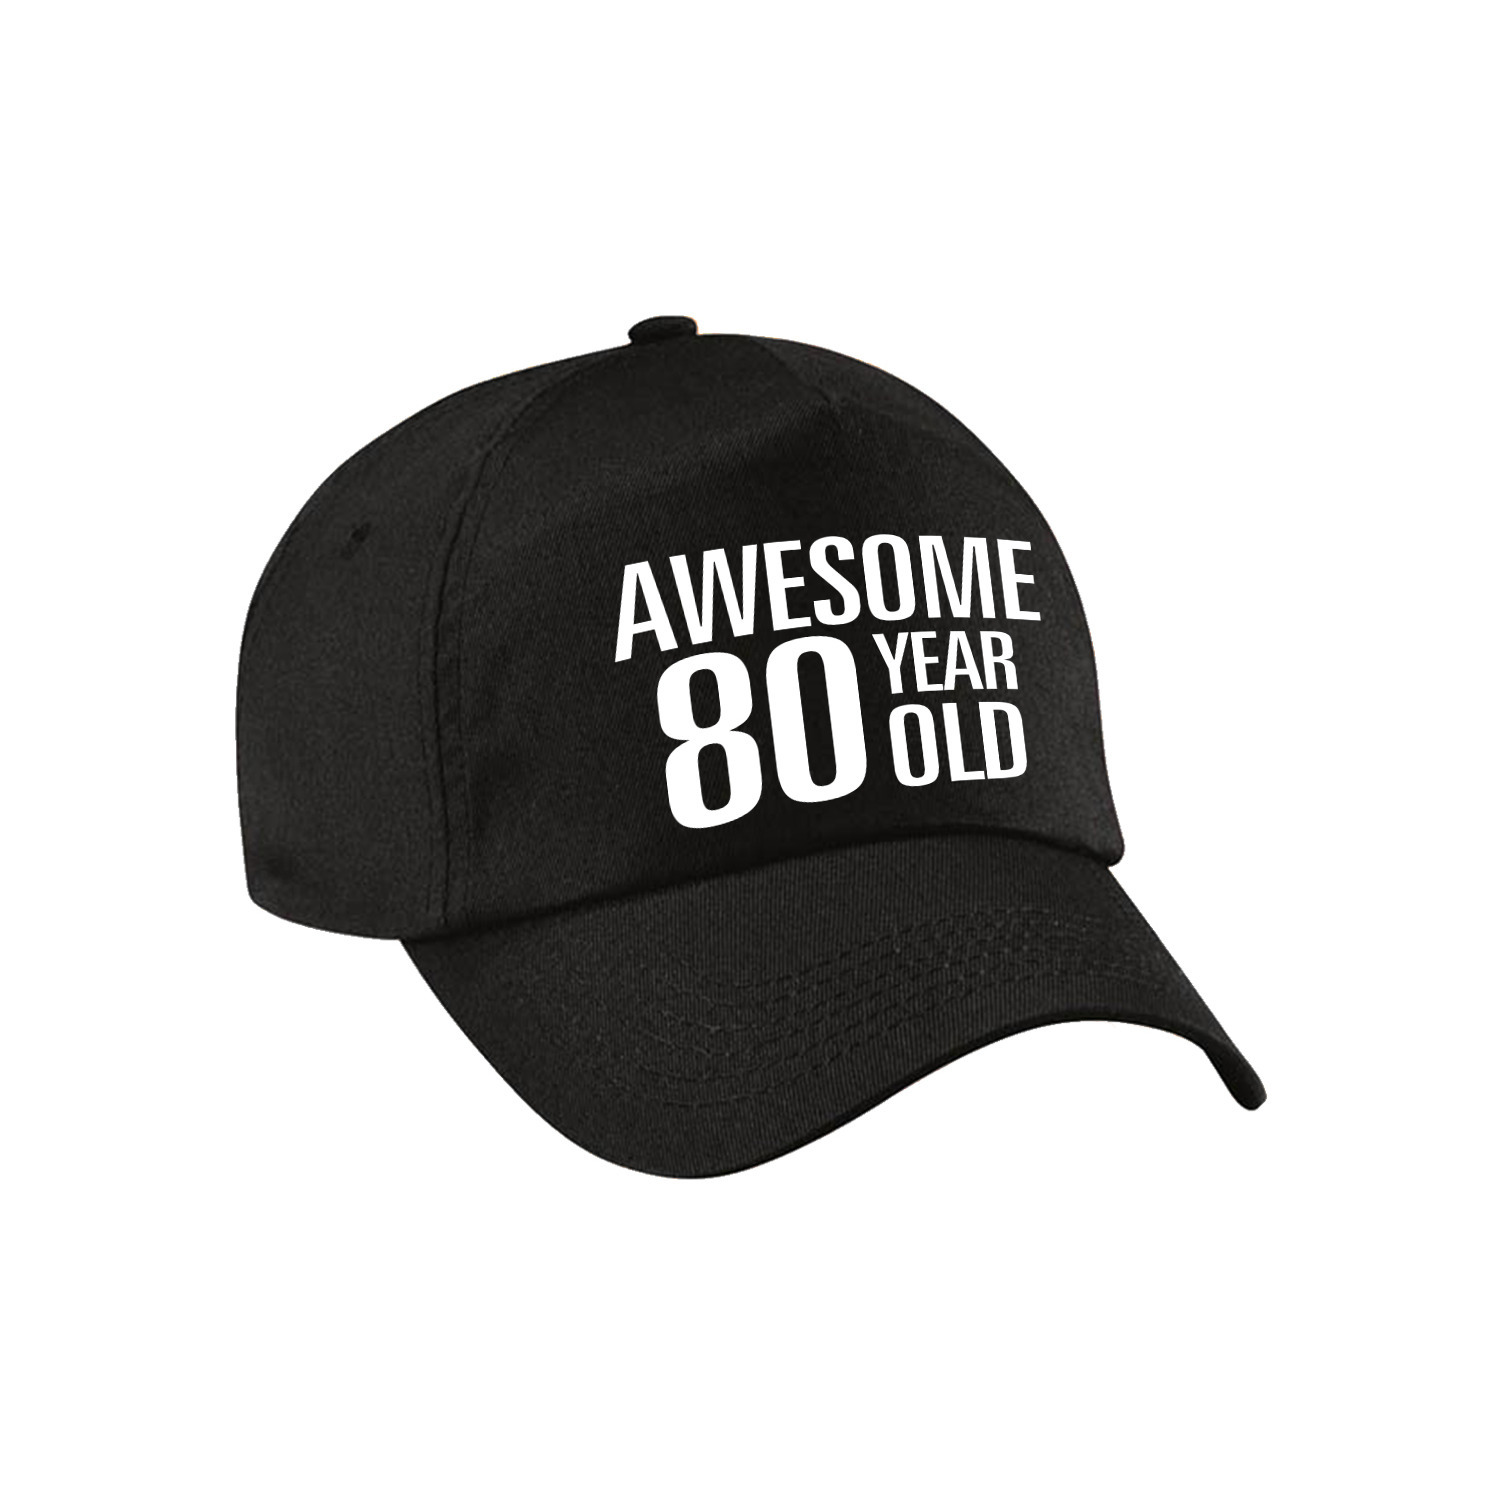 Awesome 80 year old verjaardag pet-cap zwart voor dames en heren